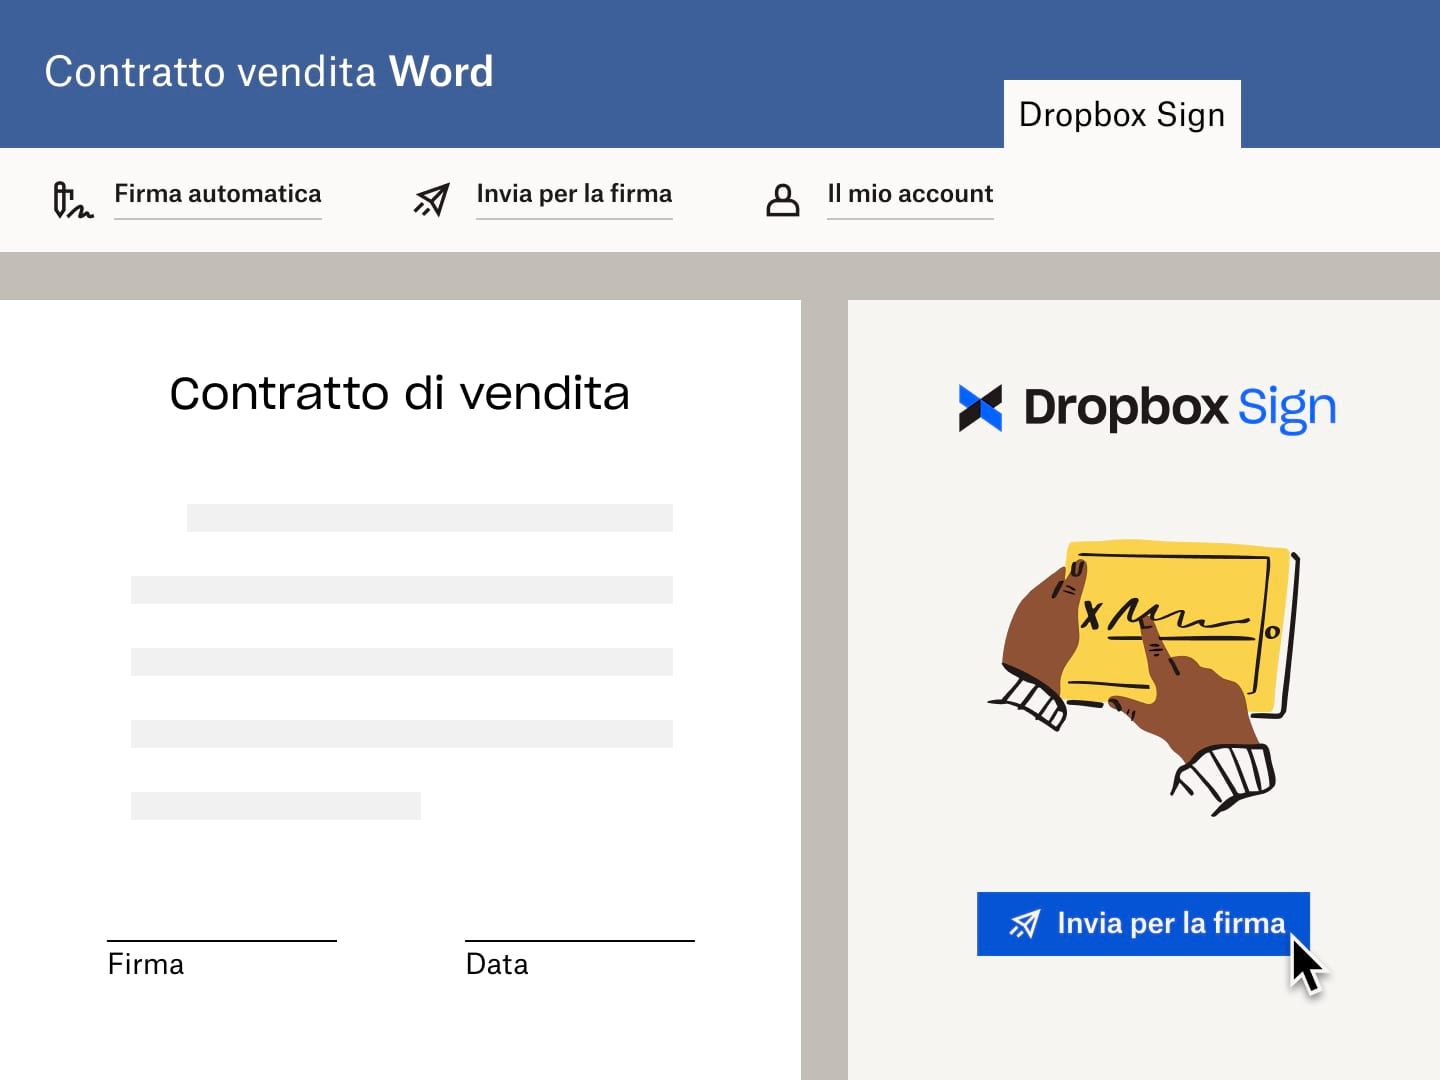 Un utente invia un contratto di vendita su Microsoft Word con una richiesta di firma elettronica tramite Dropbox Sign